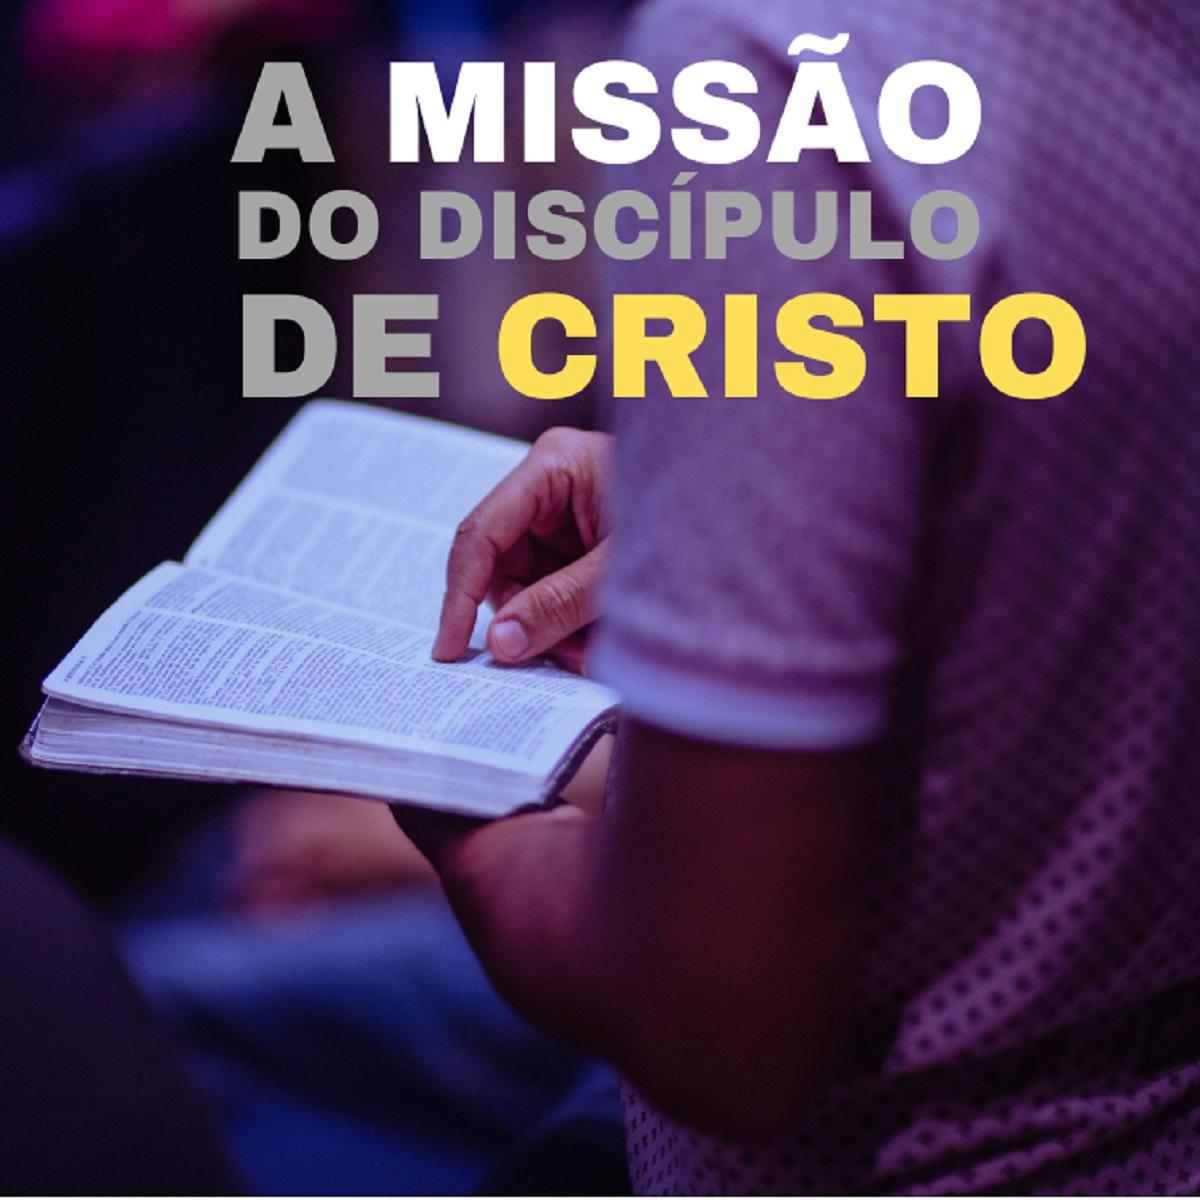 2. A Missão do Discípulo de Cristo